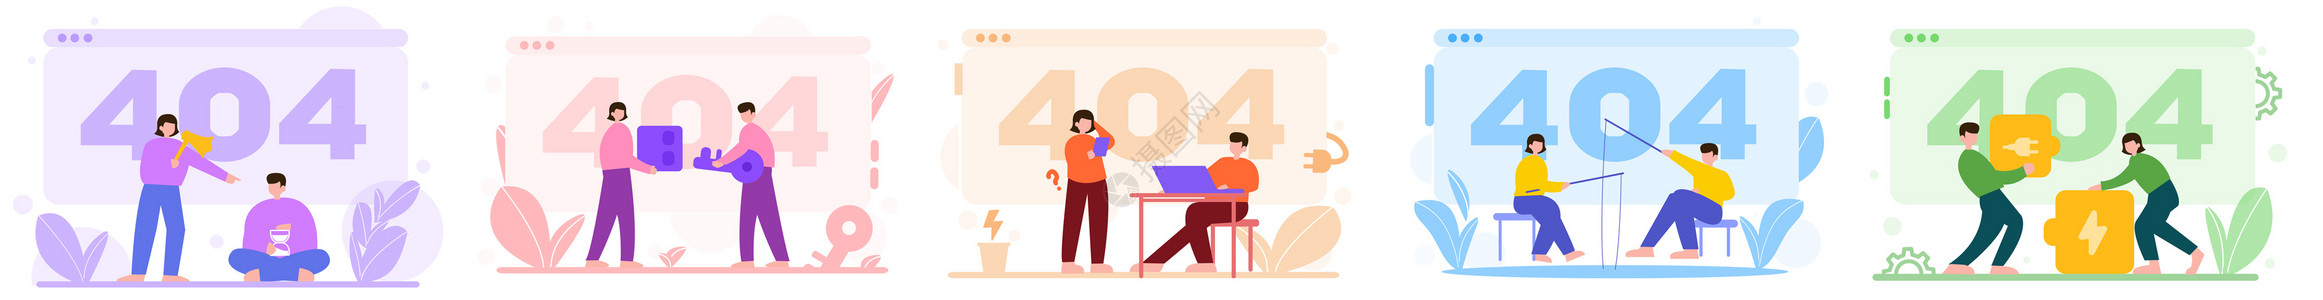 404错误网络彩色404等待电源催促人物场景插图插画